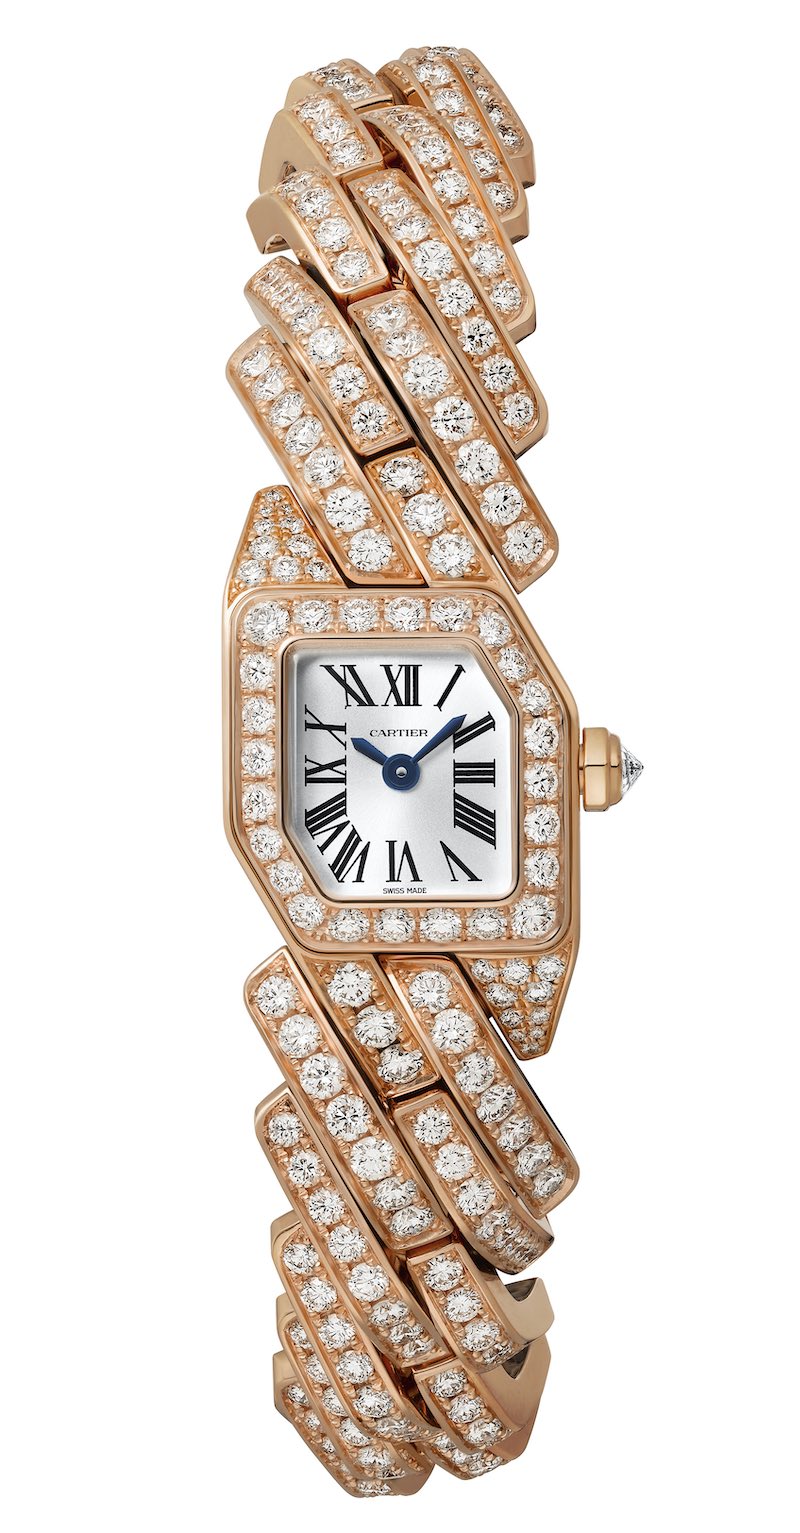 Maillon de Cartier Collection Watches